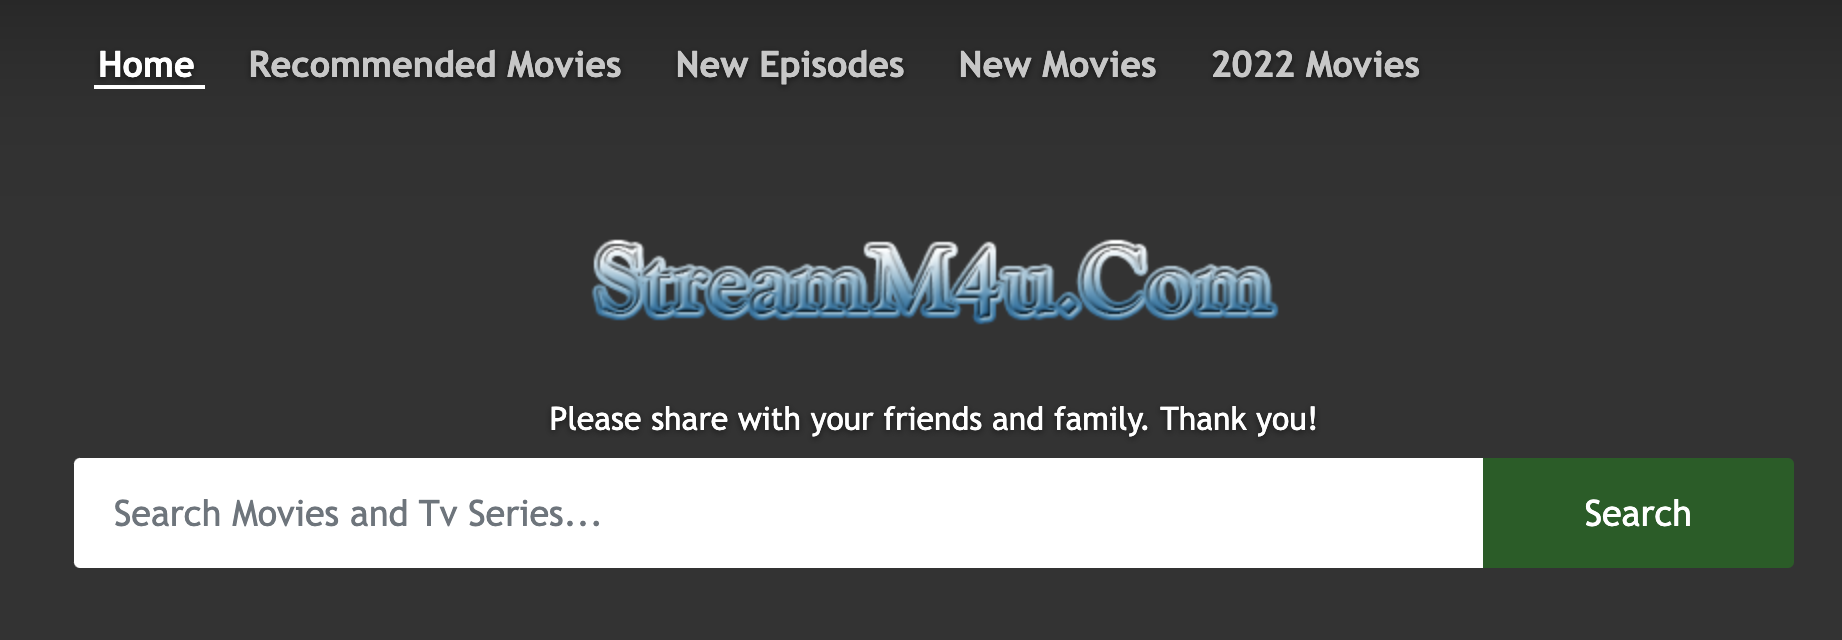 streamM4U - sitios gratuitos de transmisión de películas en línea